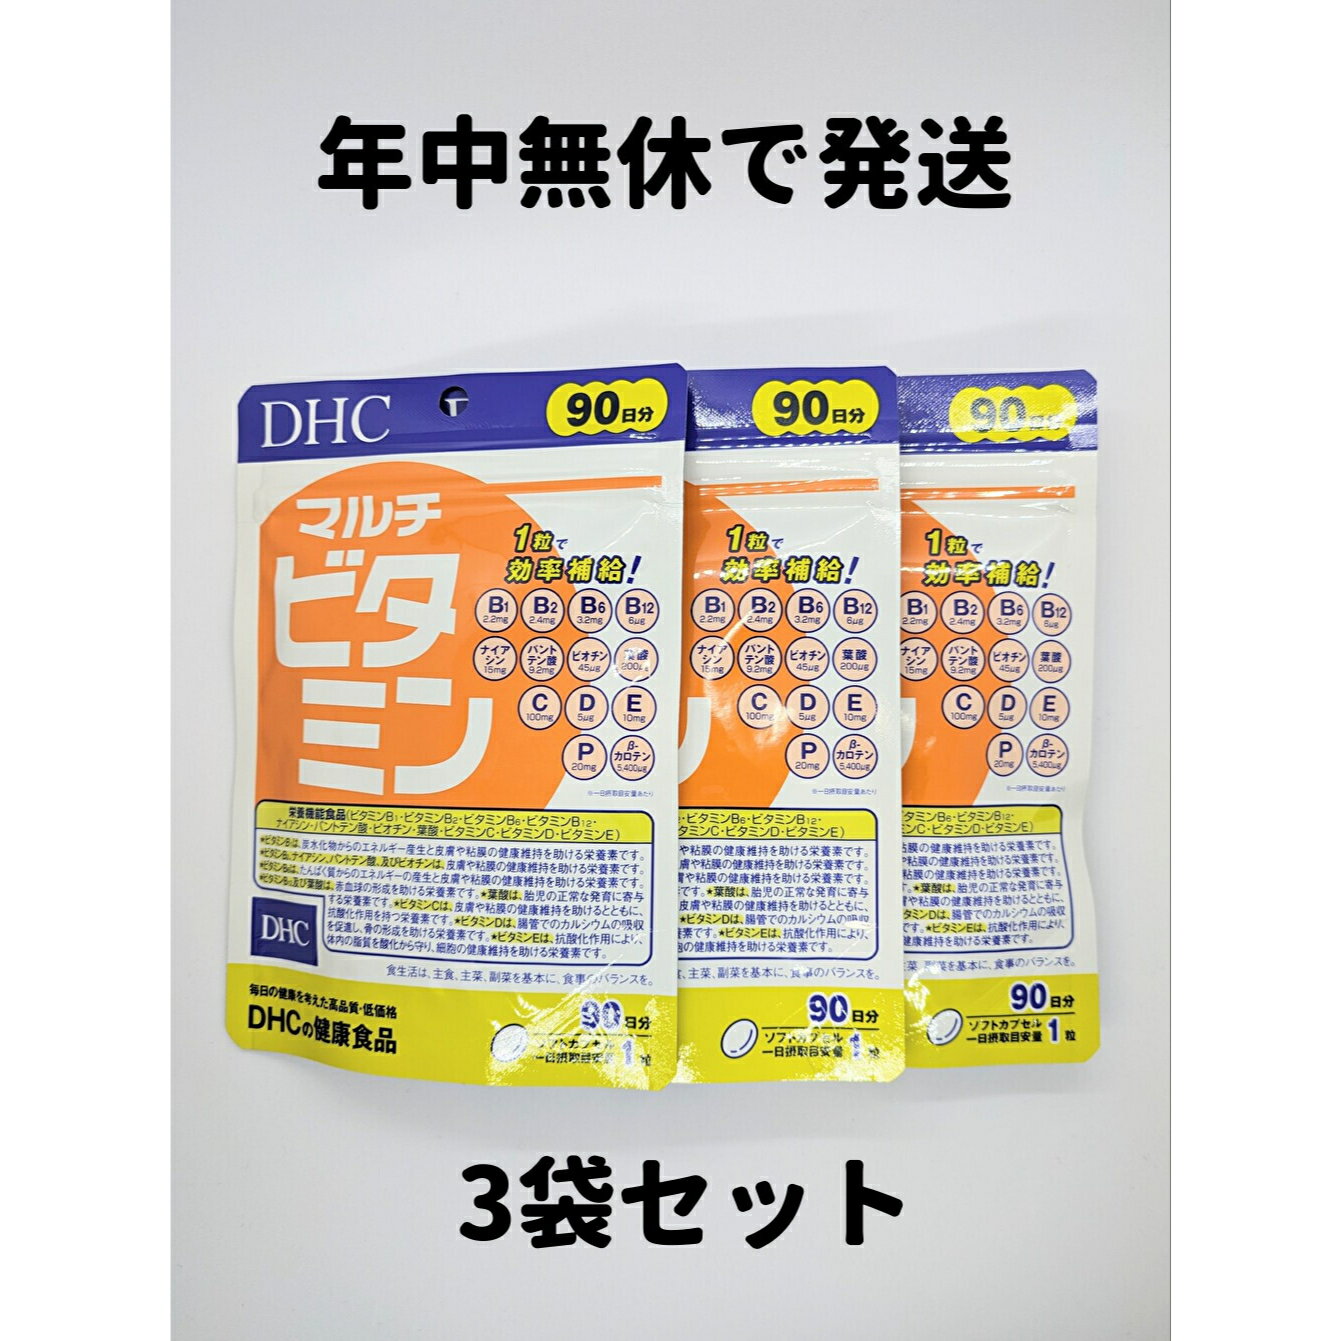 マルチビタミン DHC 3袋(90日分×3) 徳用90日分 3袋 サプリ サプリメント DHC ビタミン マルチビタミン 3袋 90日分 送料無料 軽8 RAA